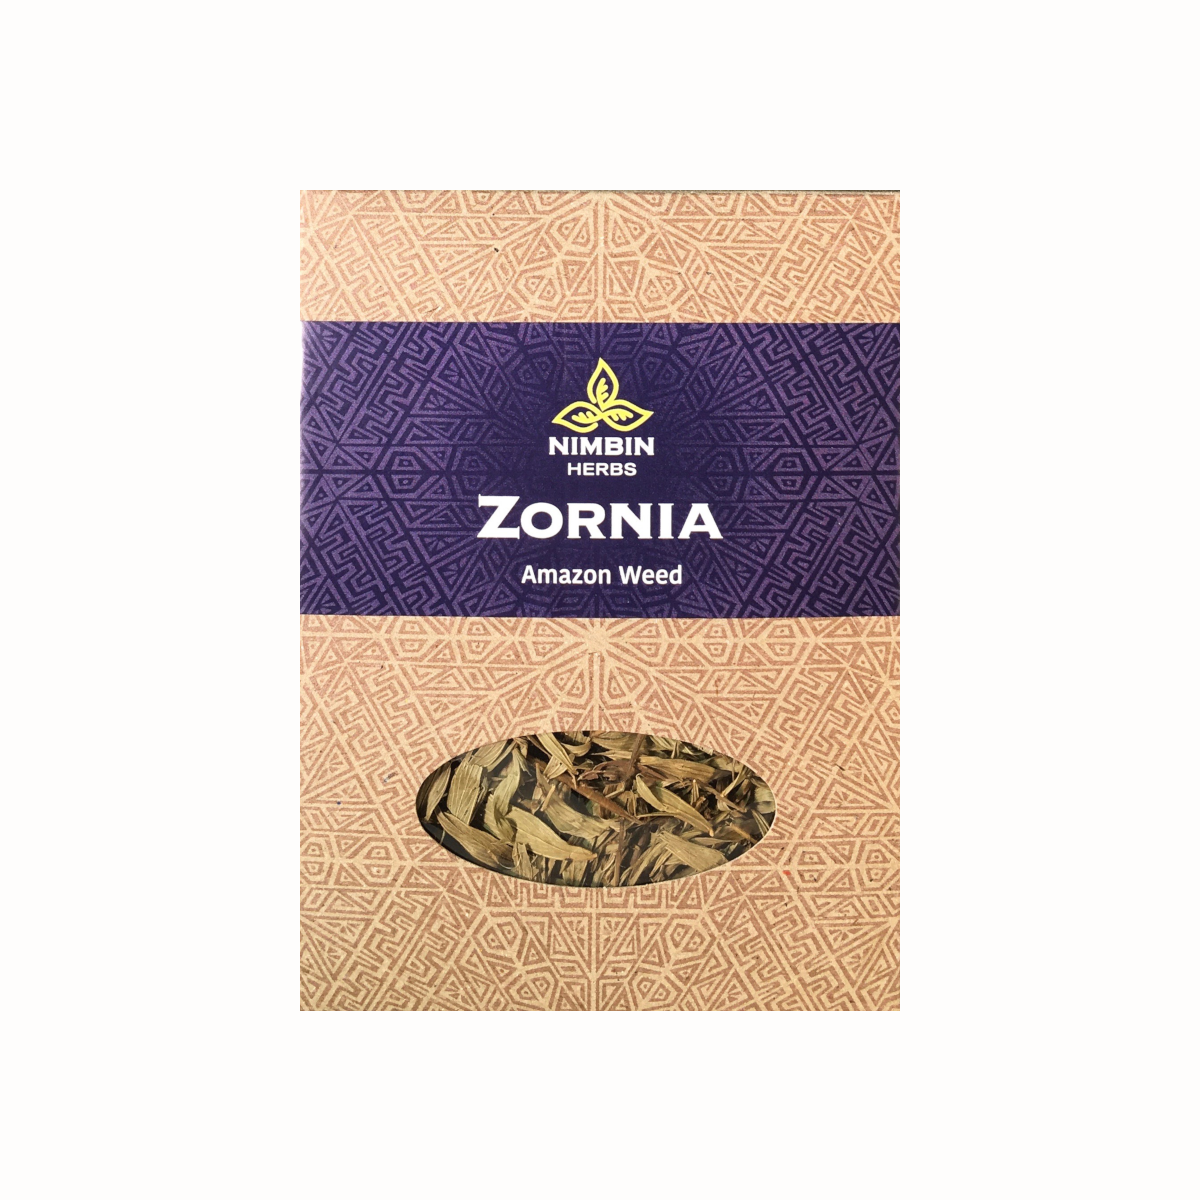 Zornia-FINAL-2.png